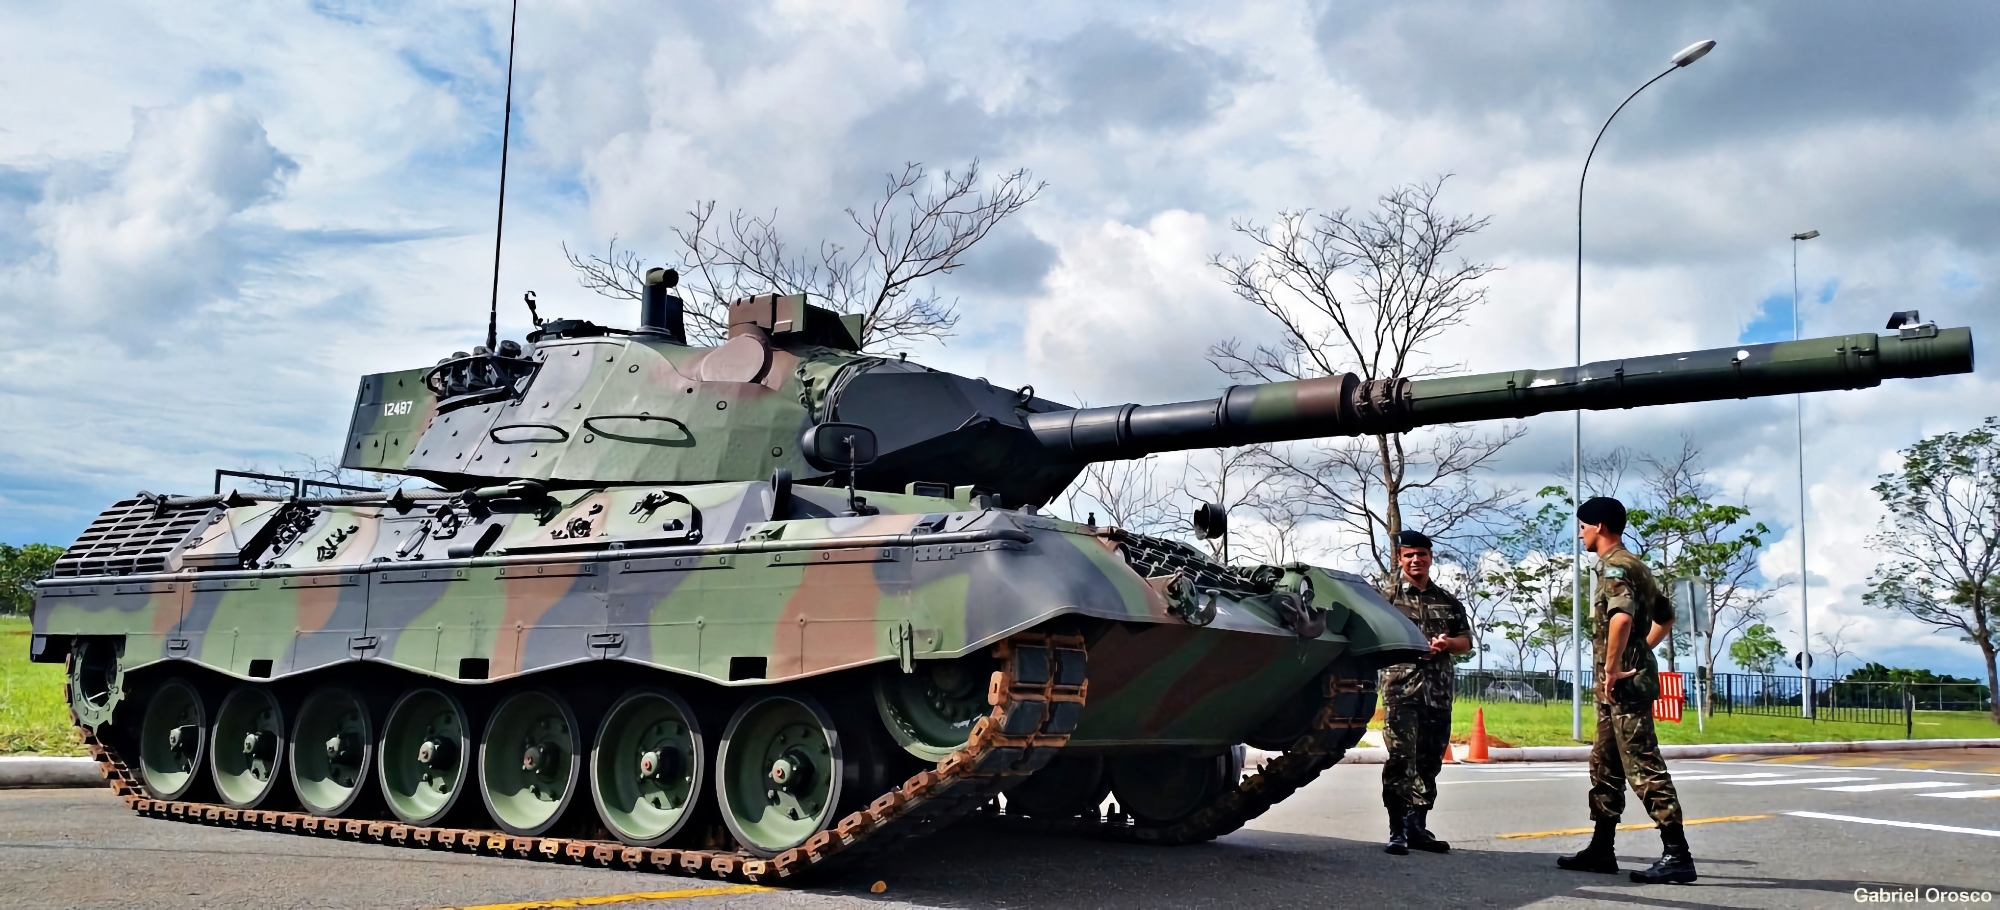 Dinamarca transferirá a Ucrania tanques, munición y vehículos aéreos no tripulados por valor de 1.000 millones de euros